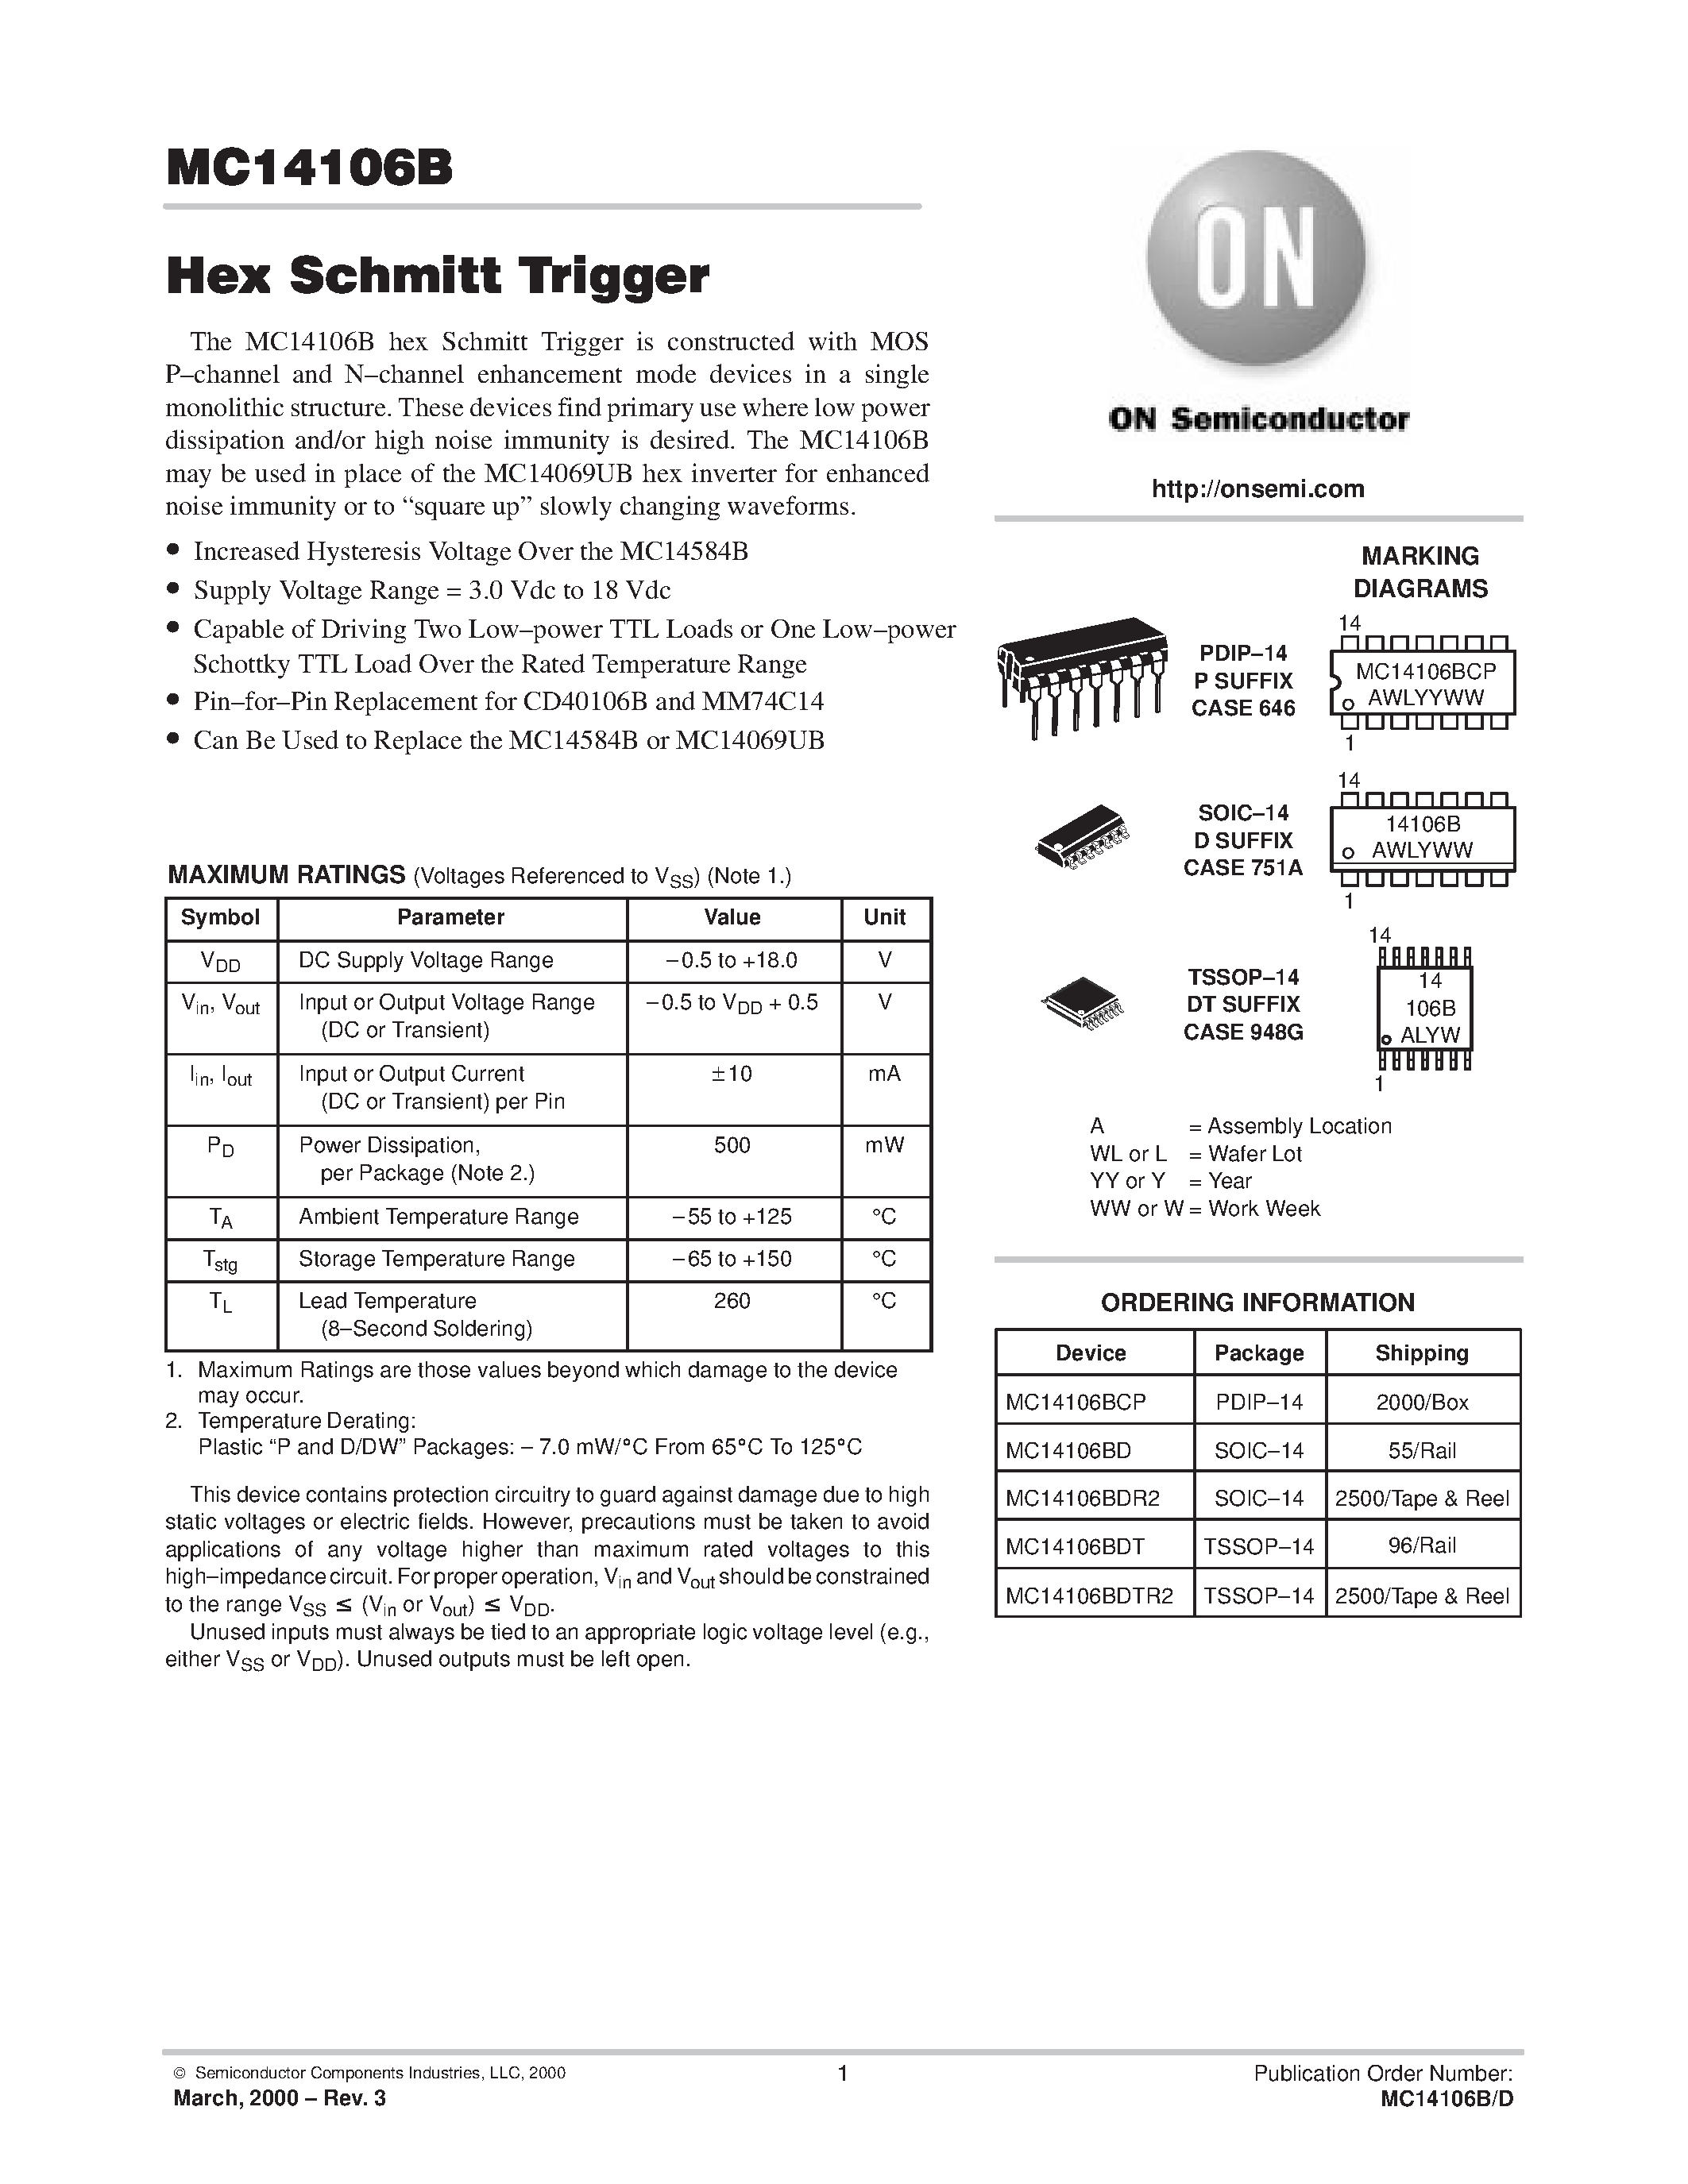 Даташит MC14106BCP-Hex Schmitt Trigger страница 1